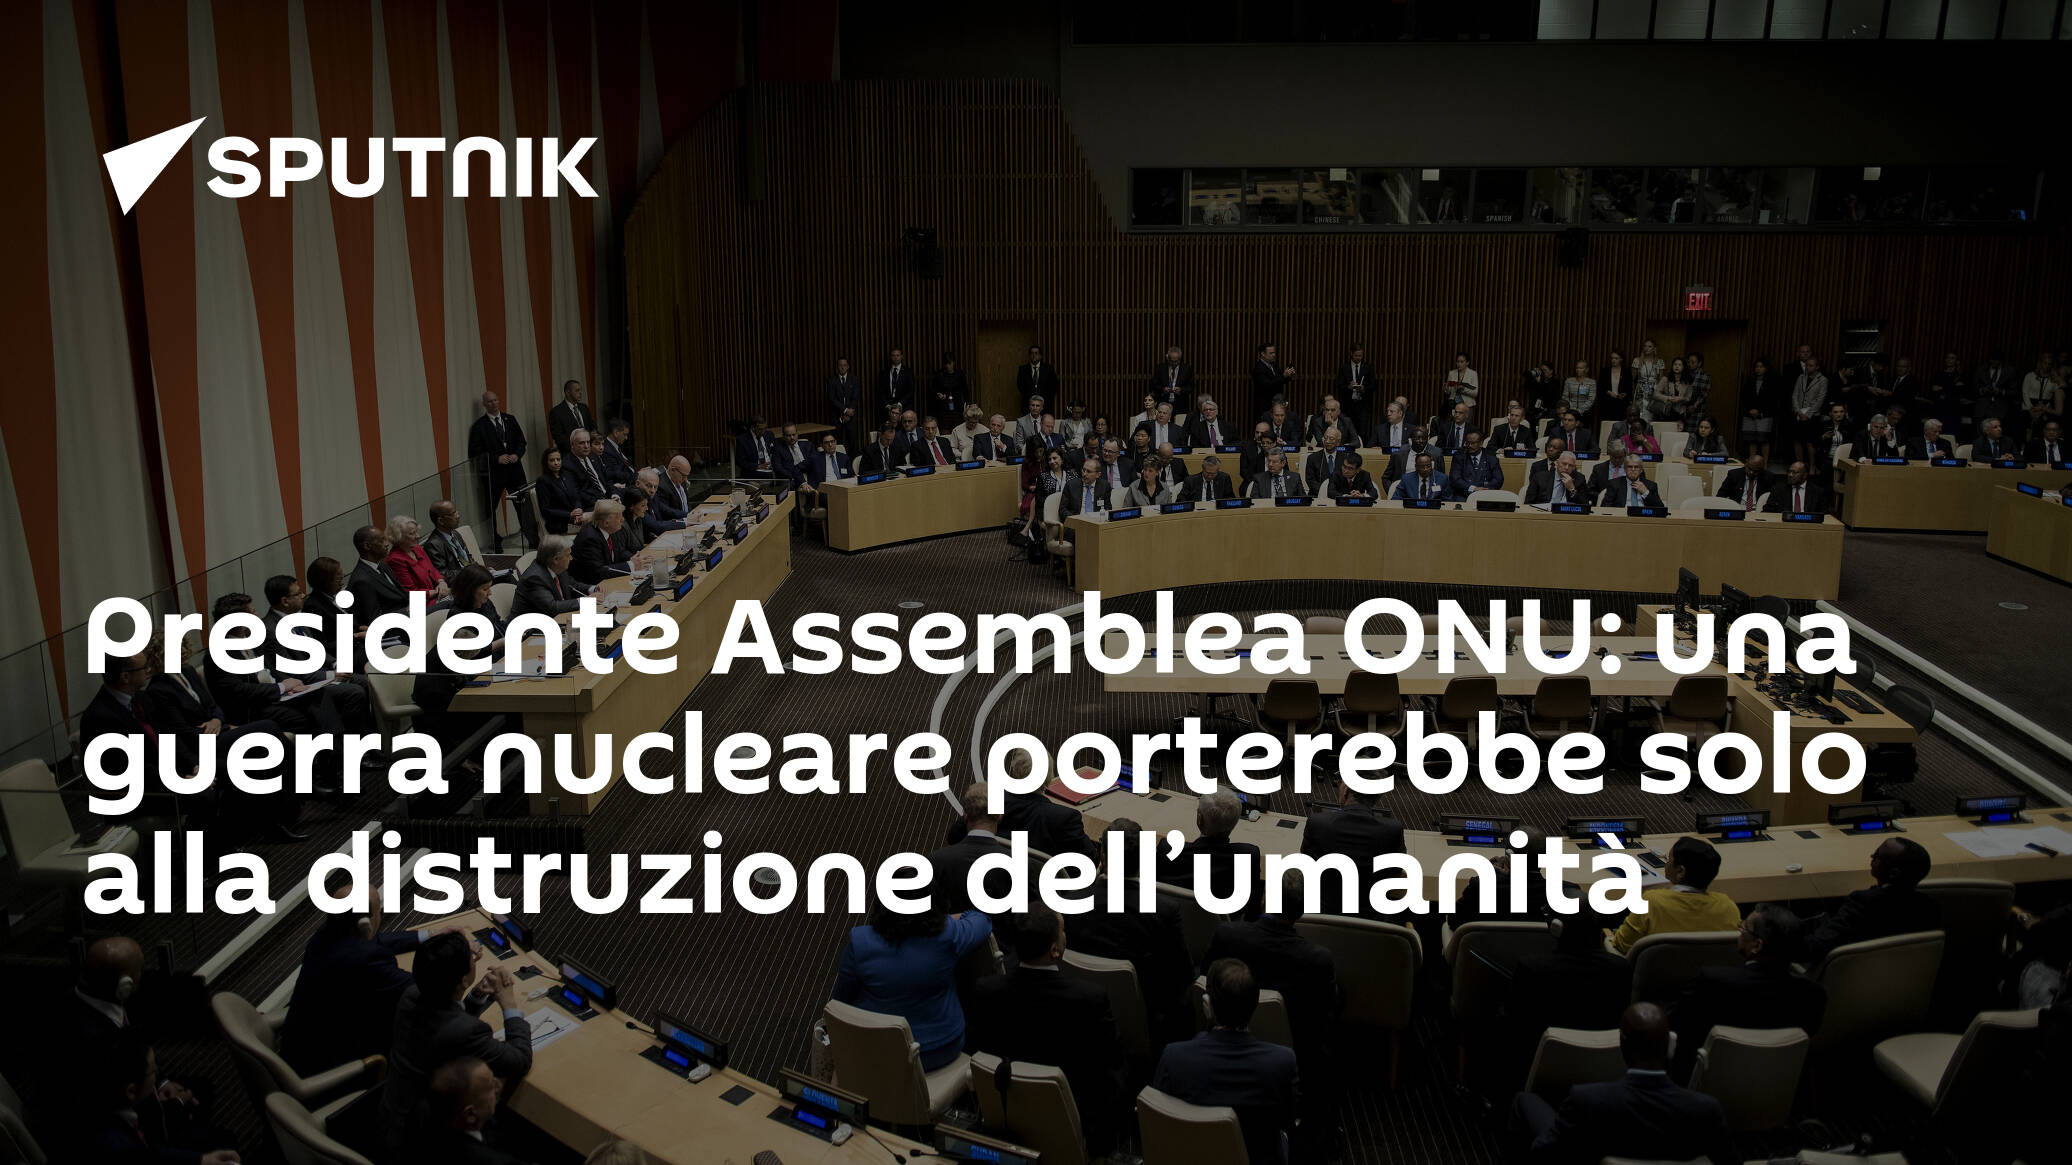 Presidente Assemblea ONU: una guerra nucleare porterebbe solo alla distruzione dell’umanità